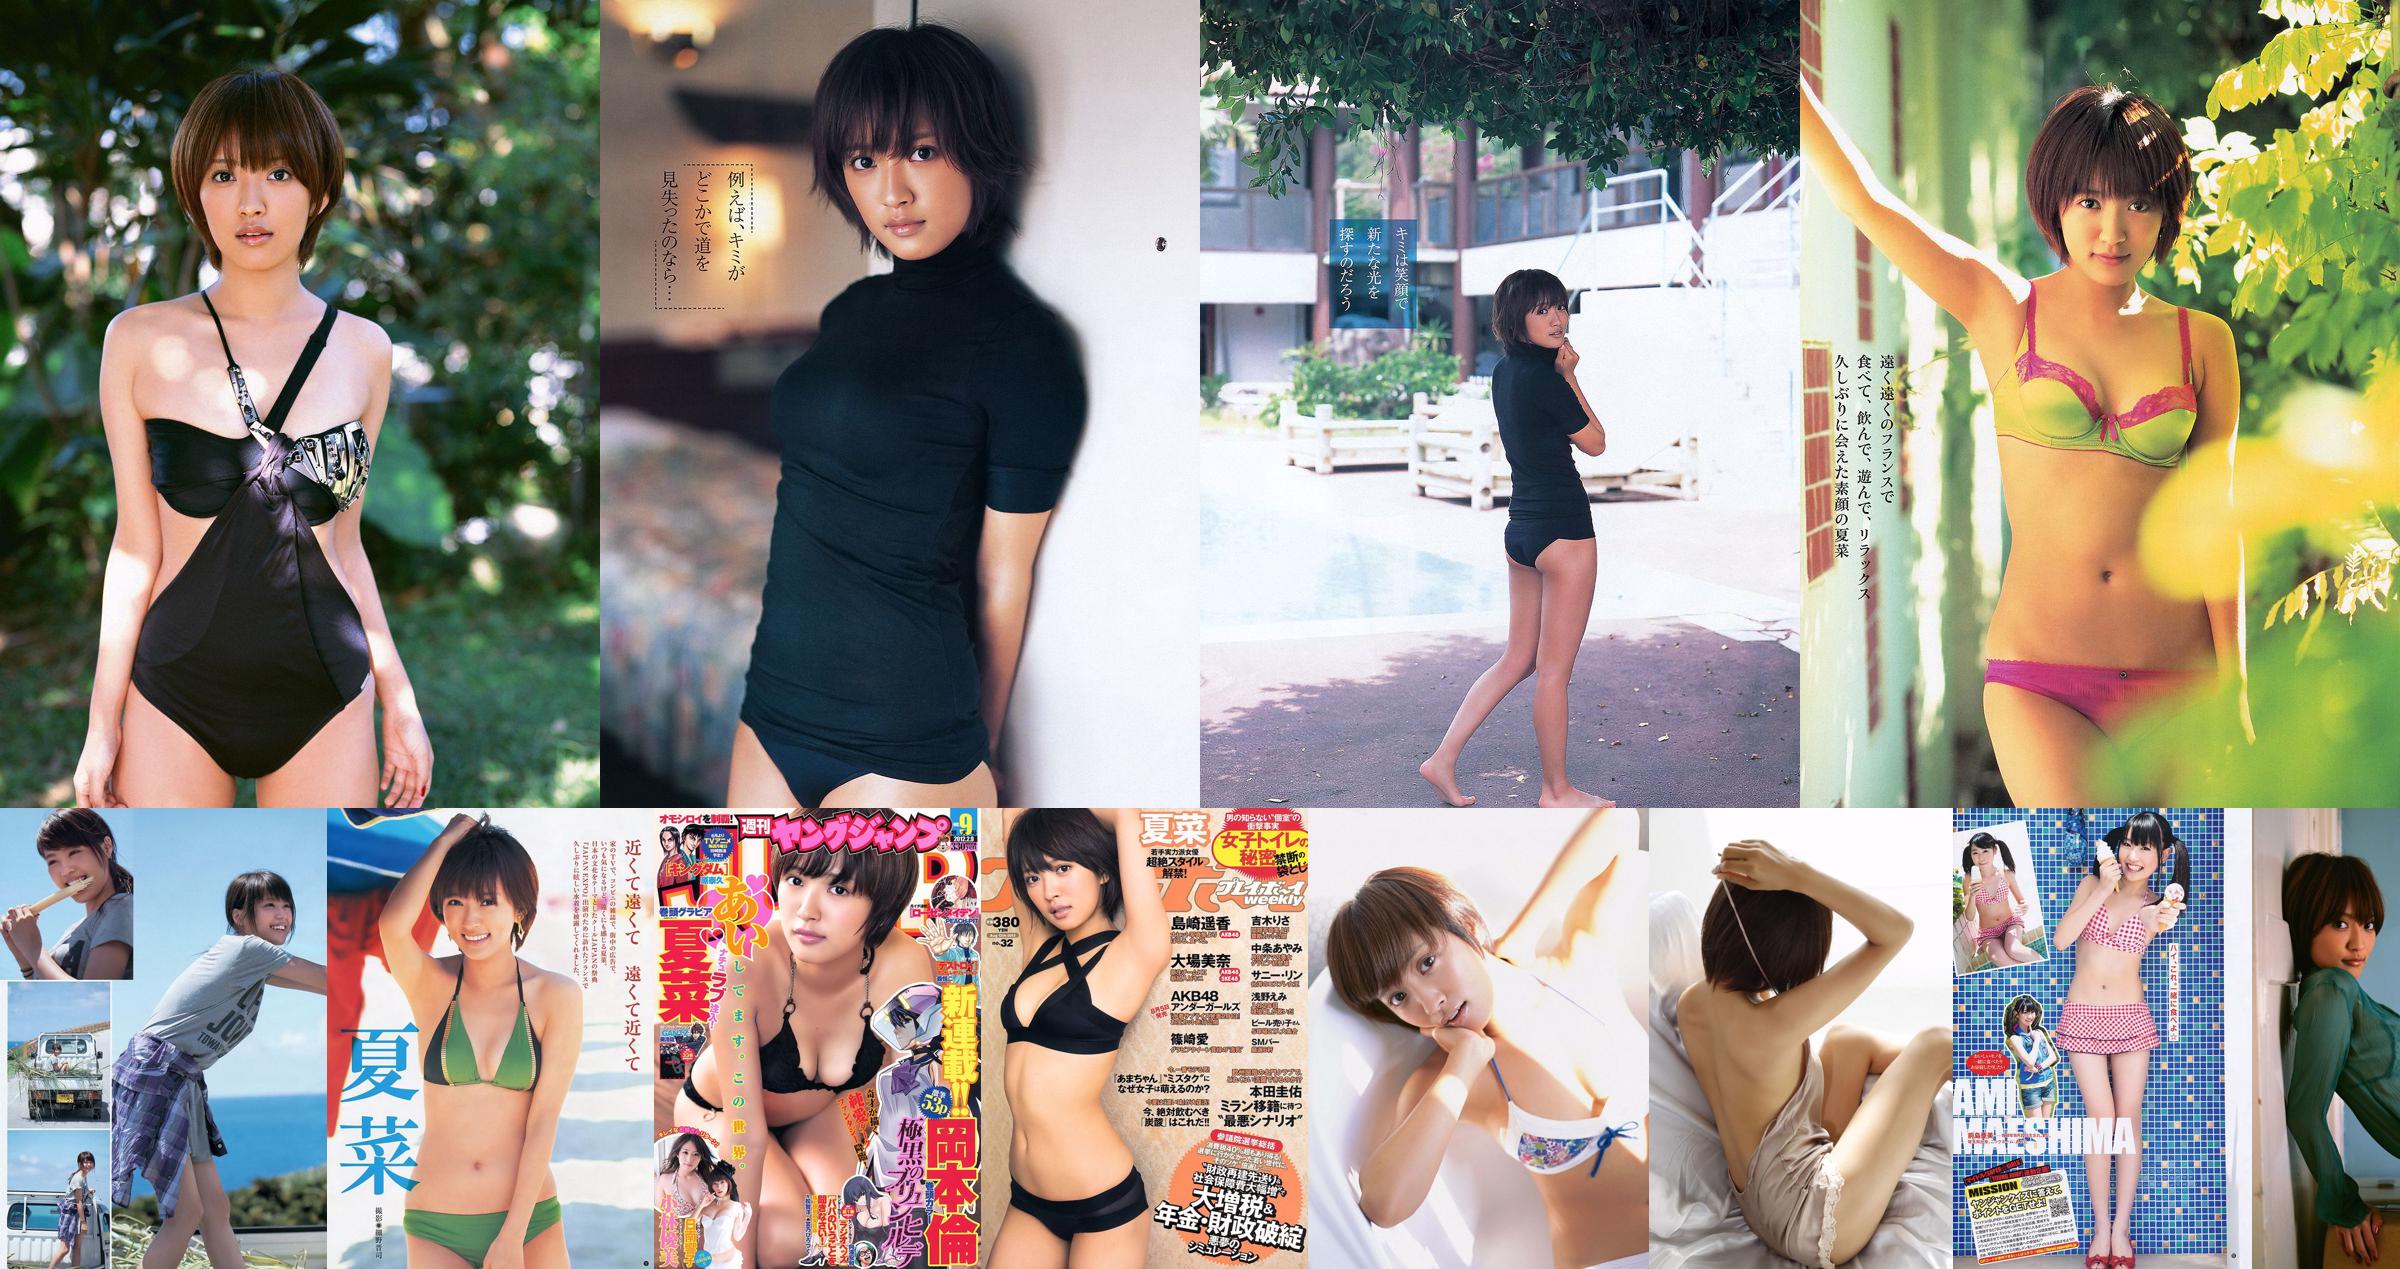 Natsuna Arimura Kasumi Nishizaki Rima Ito Yumi Adachi Yumi KONAN Toda Rei Aina Komiya Arisa [Wöchentlicher Playboy] 2013 Nr. 47 Foto Toshi No.76f926 Seite 1